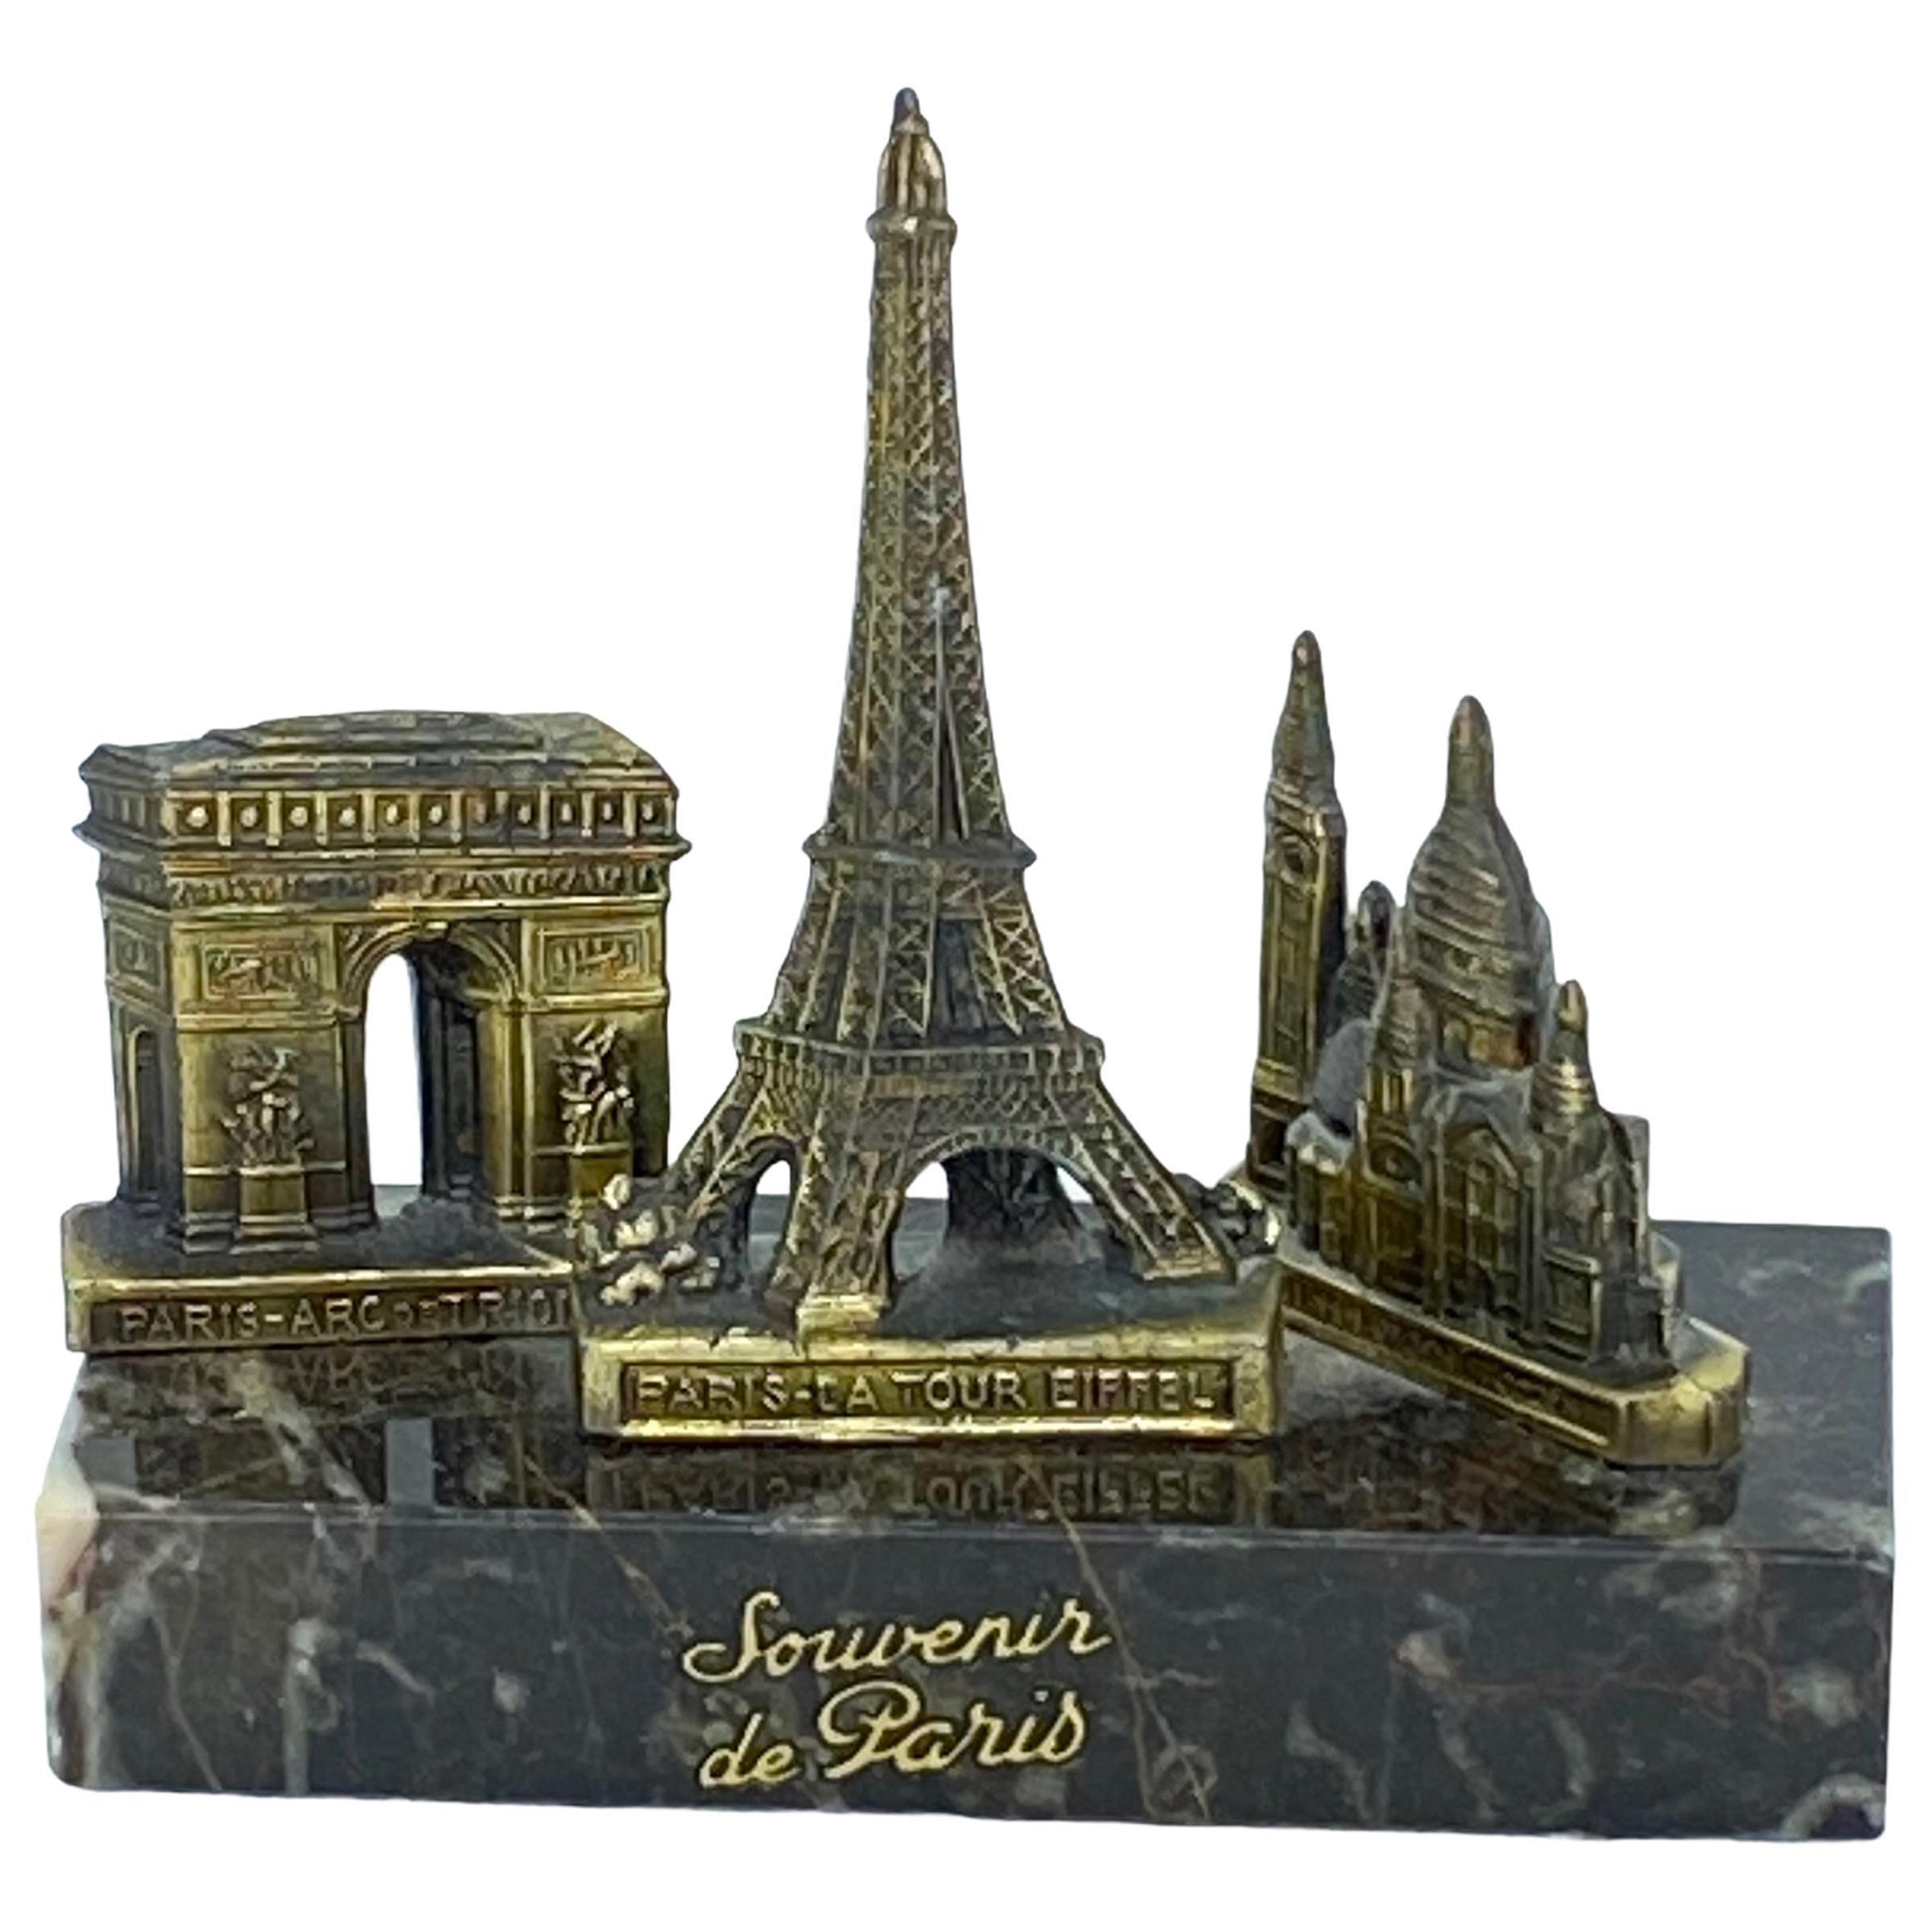 Tour Eiffel, Sacr-Coeur, Arc de Triomphe Souvenir, Modèle architectural de bâtiment